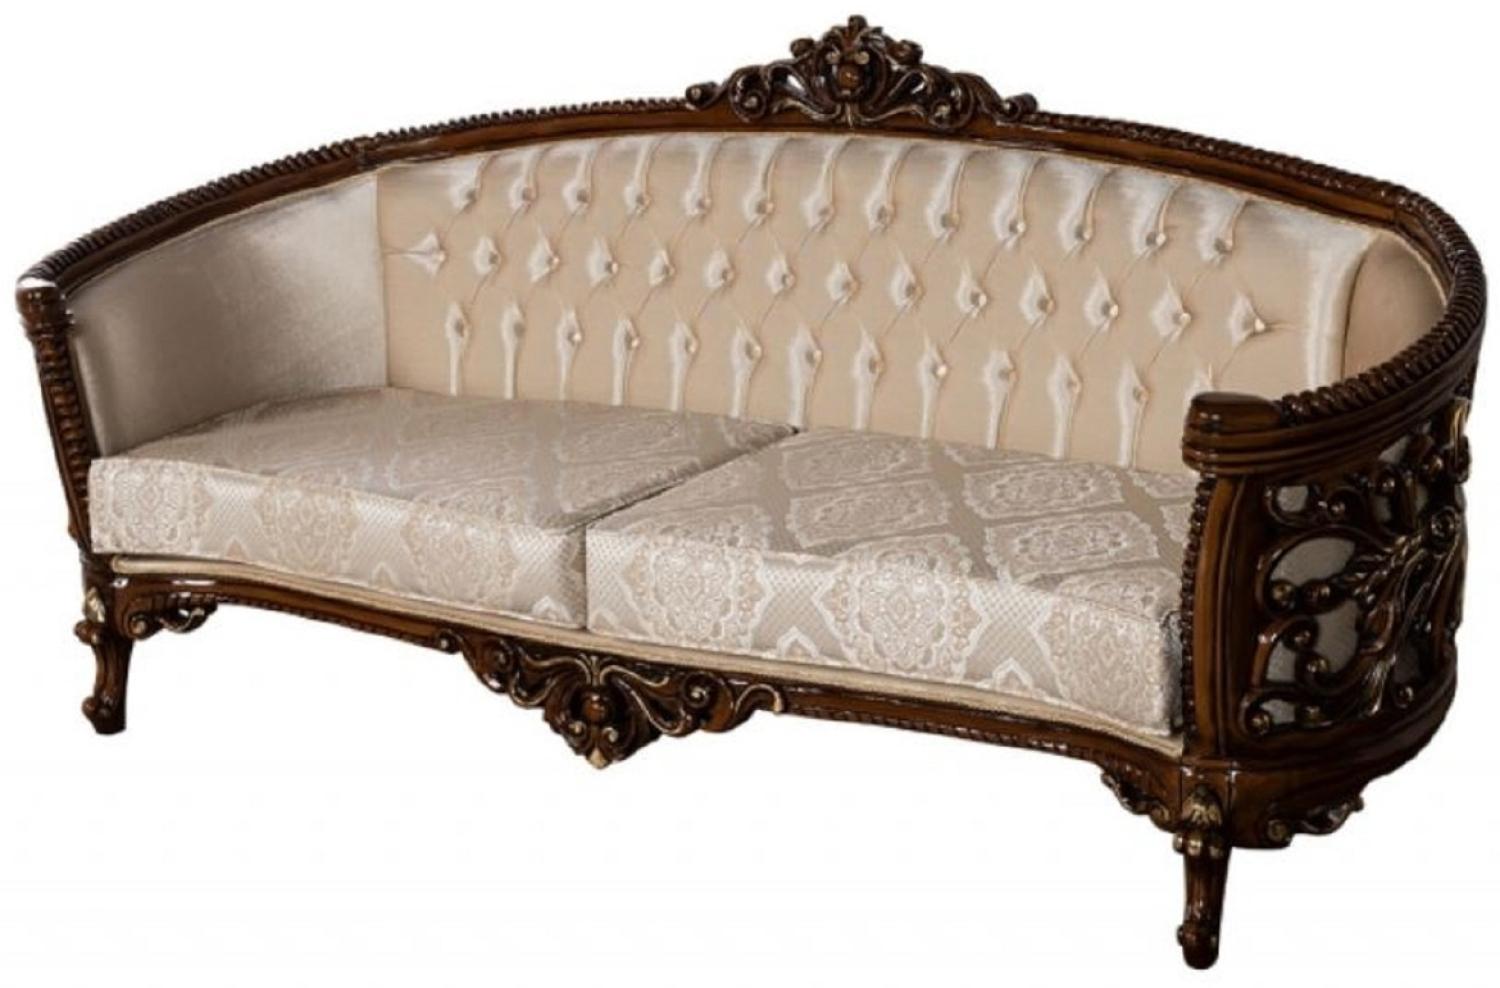 Casa Padrino Luxus Barock Sofa Beige / Braun / Gold - Prunkvolles Wohnzimmer Sofa mit elegantem Muster - Barock Wohnzimmer Möbel Bild 1